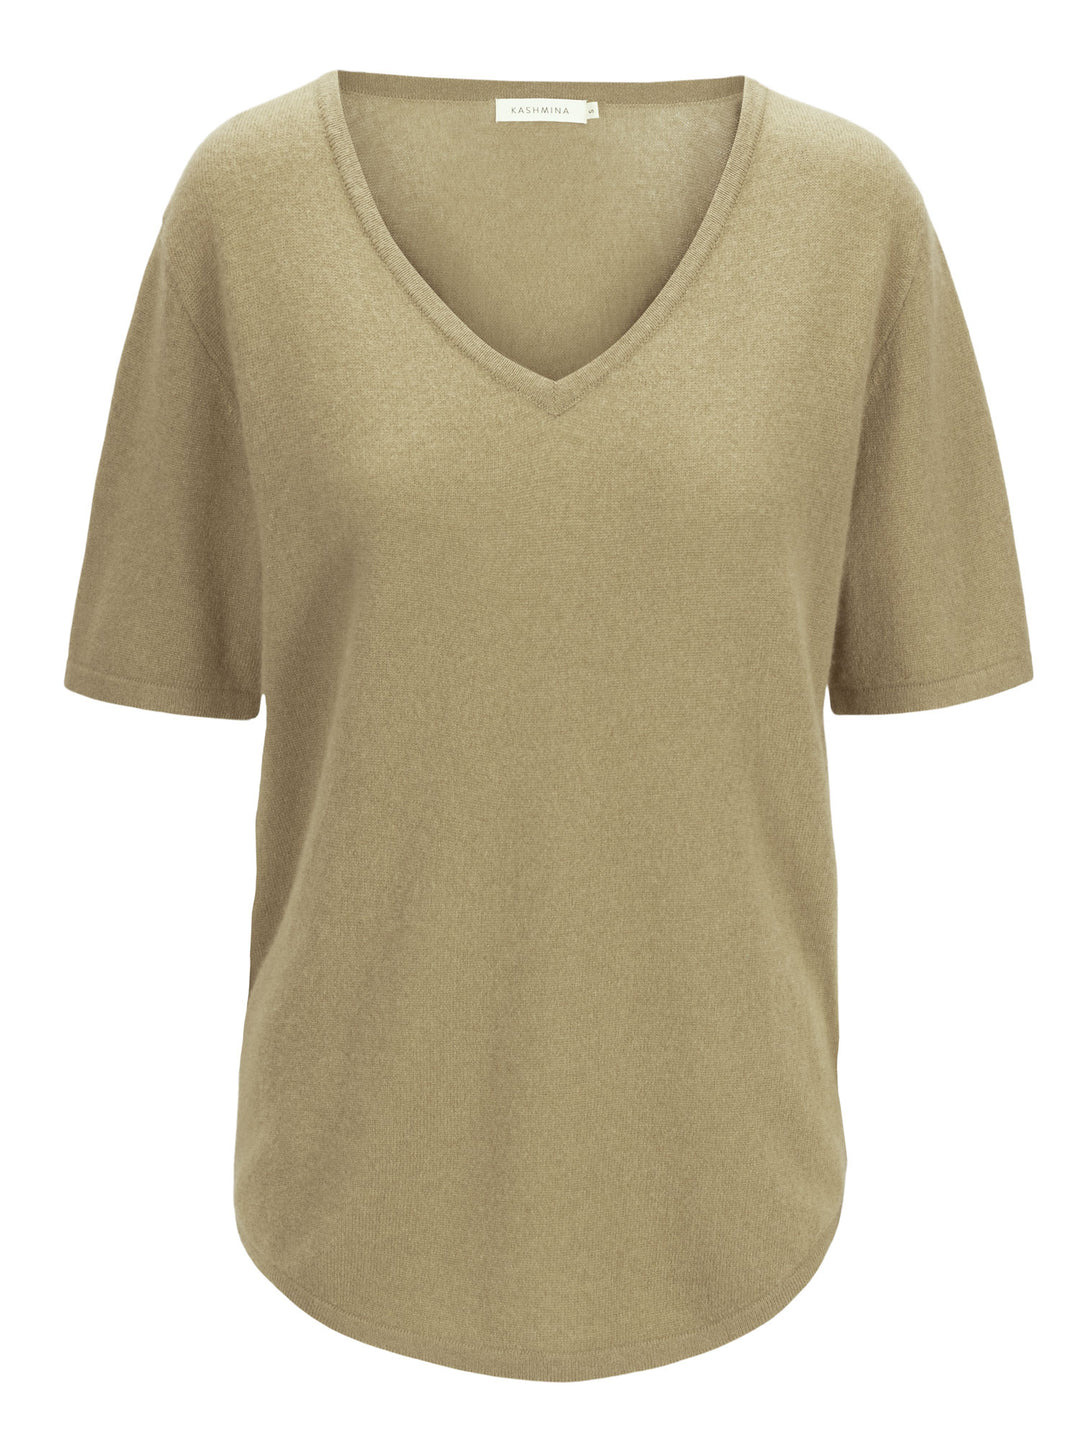 Cashmere T-shirt "Iben" 100% cashmere from Kashmina. Color: Olive